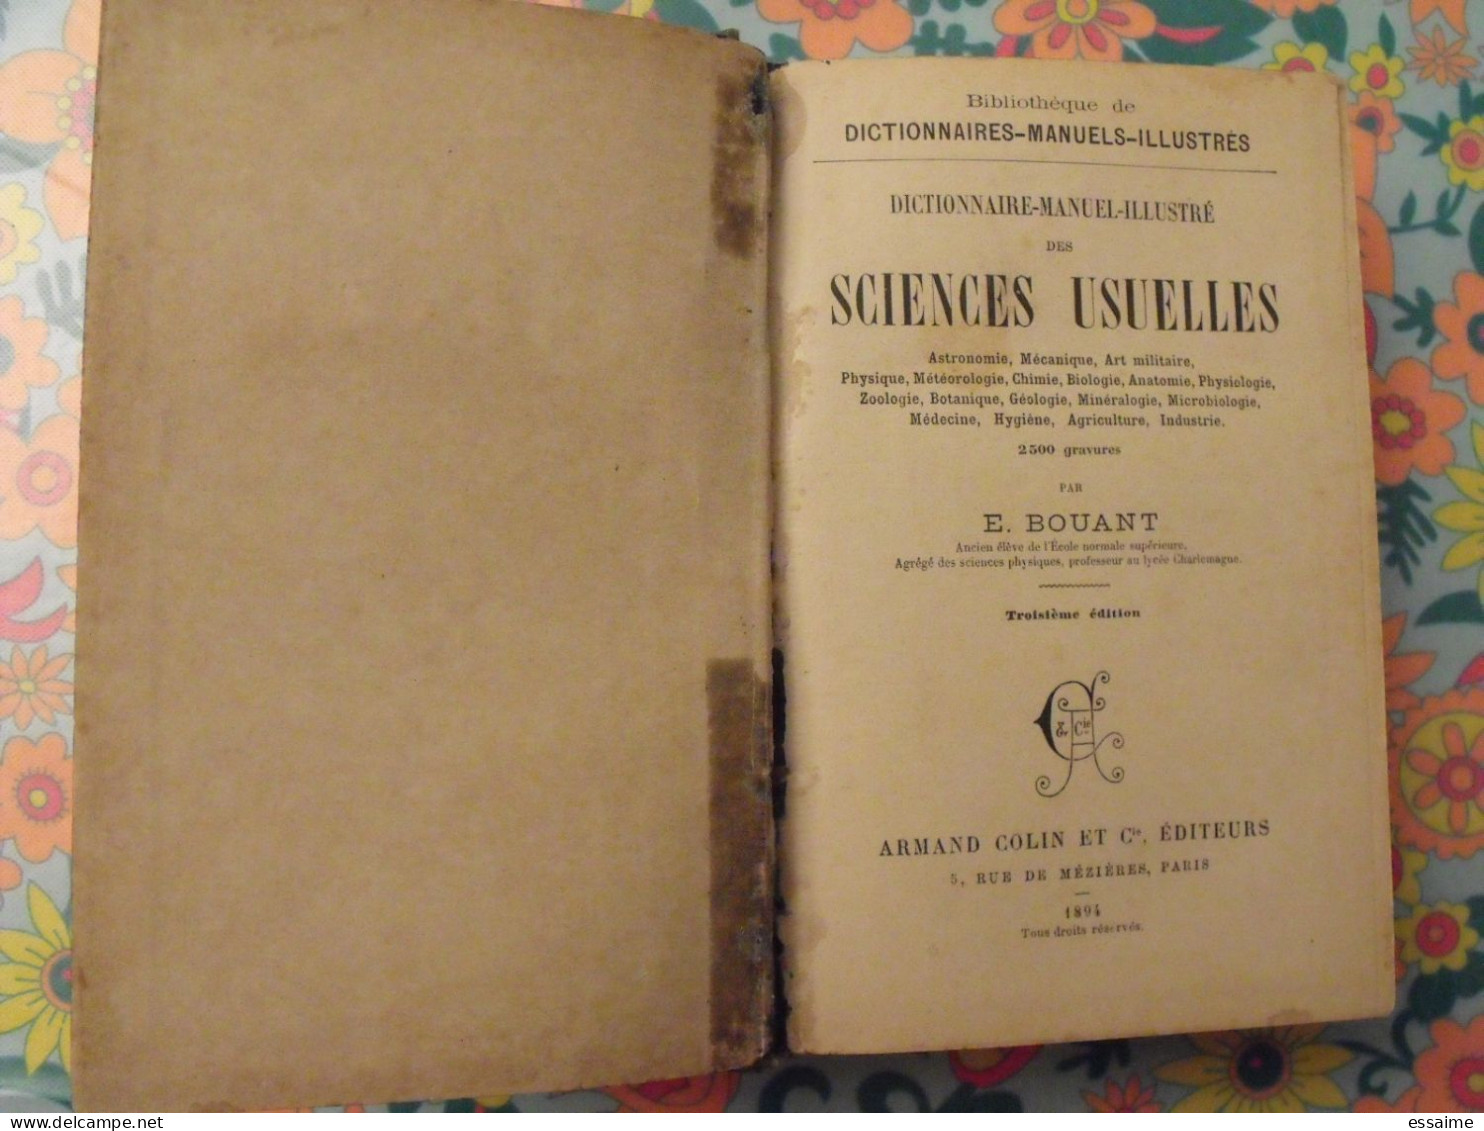 Dictionnaire Manuel Illustré Des Sciences Usuelles. E. Bouant. Armand Colin, Paris, 1894 - Dictionnaires